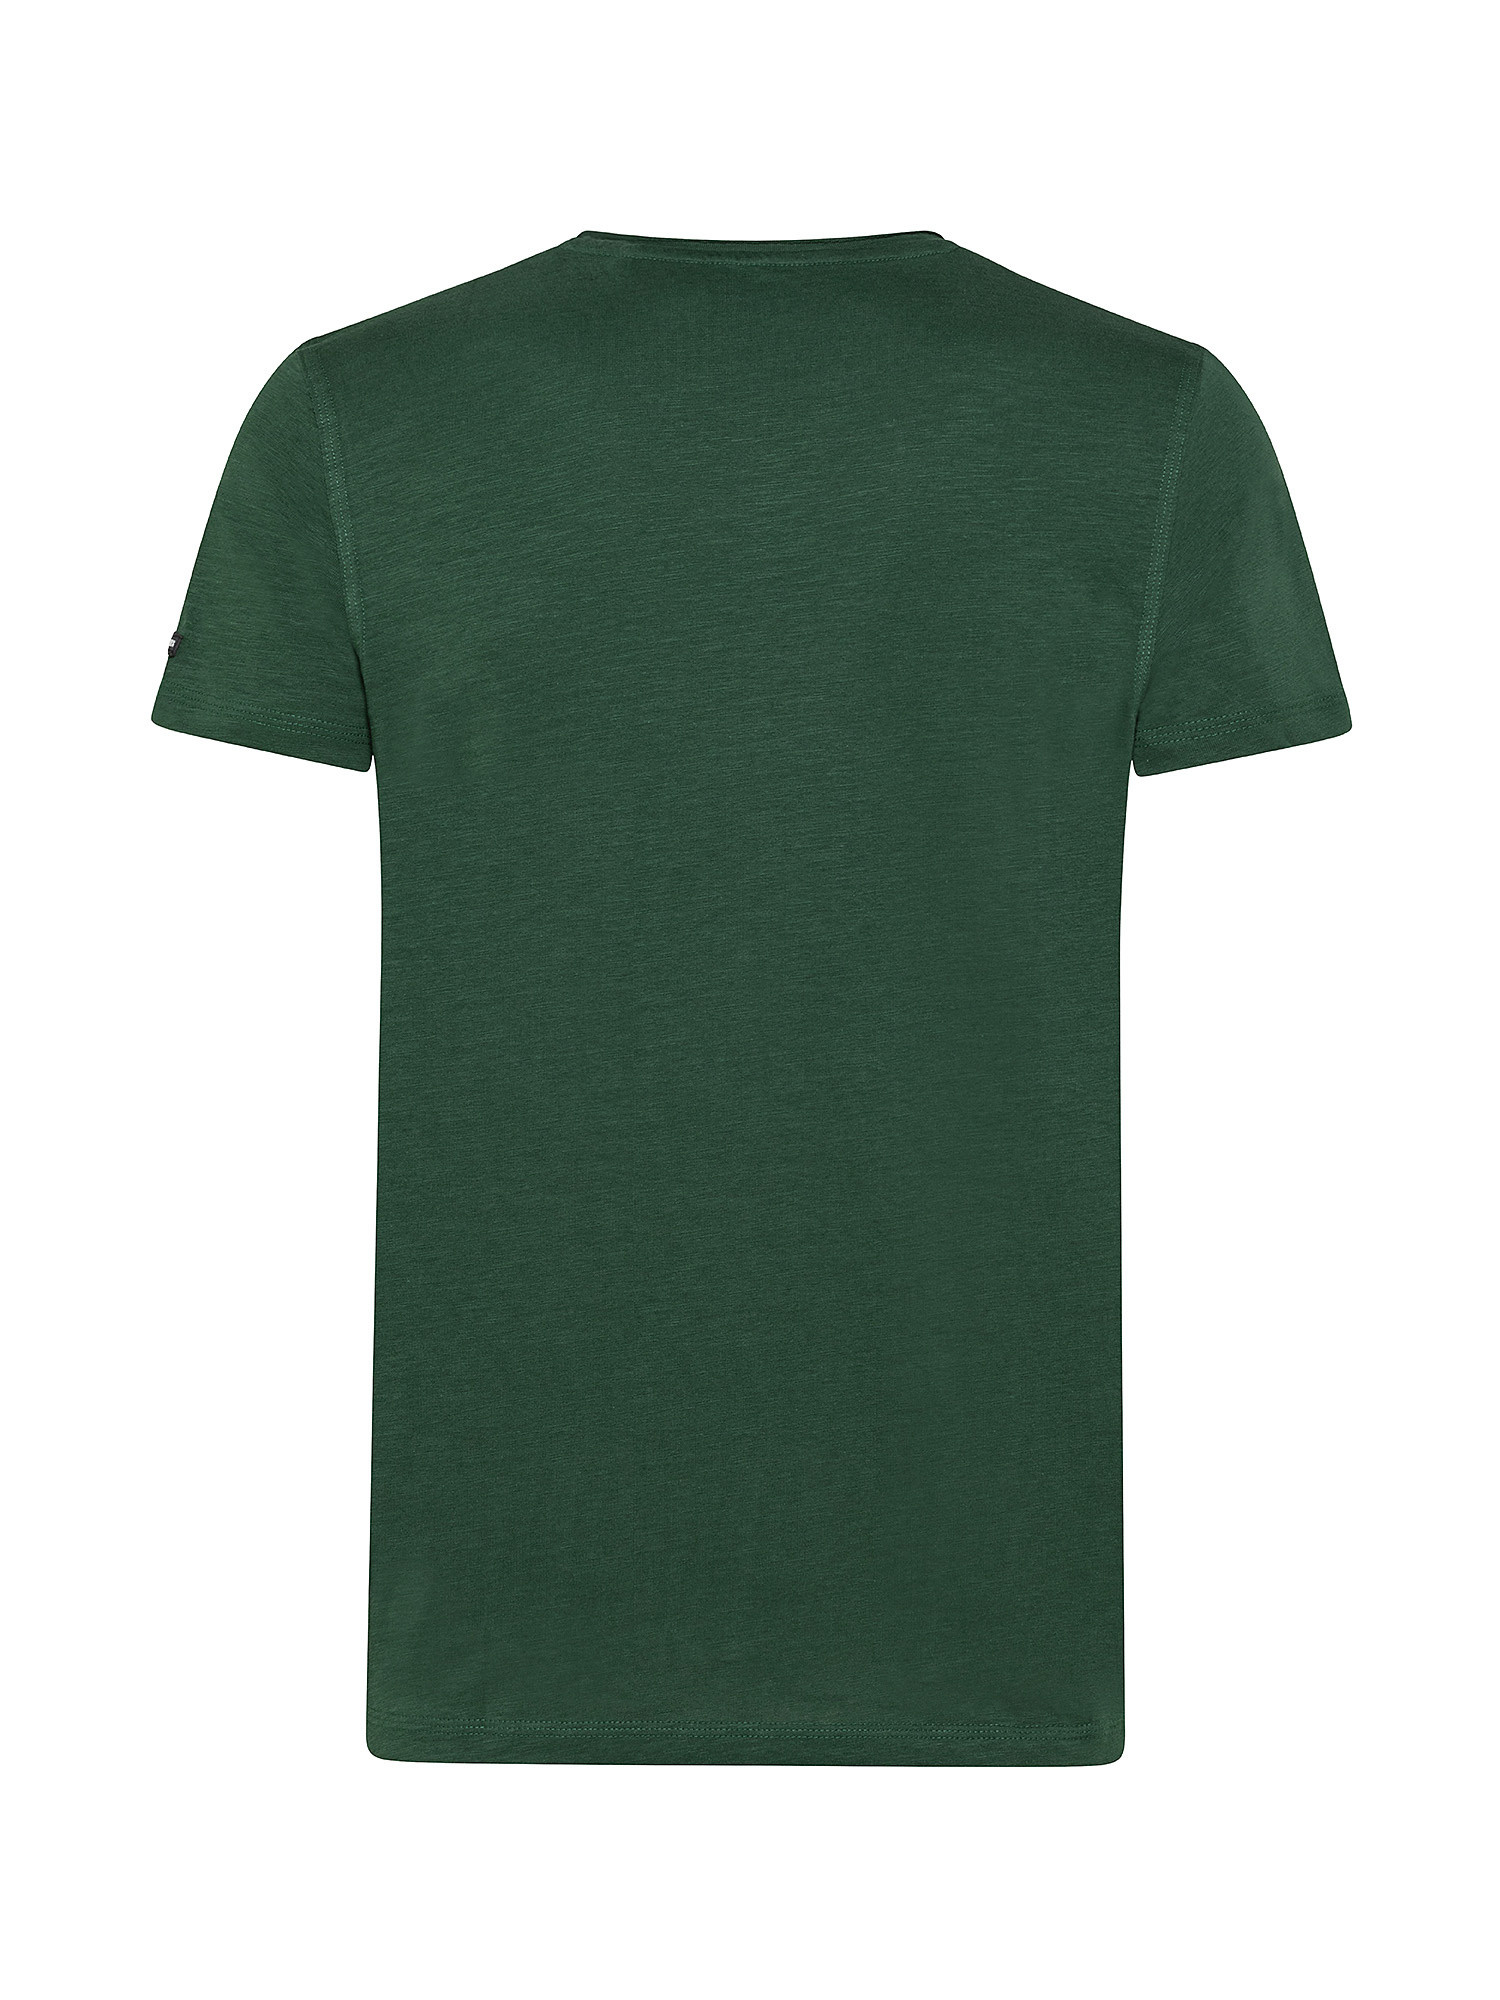 Sherlock cotton T-shirt, Green, large image number 1